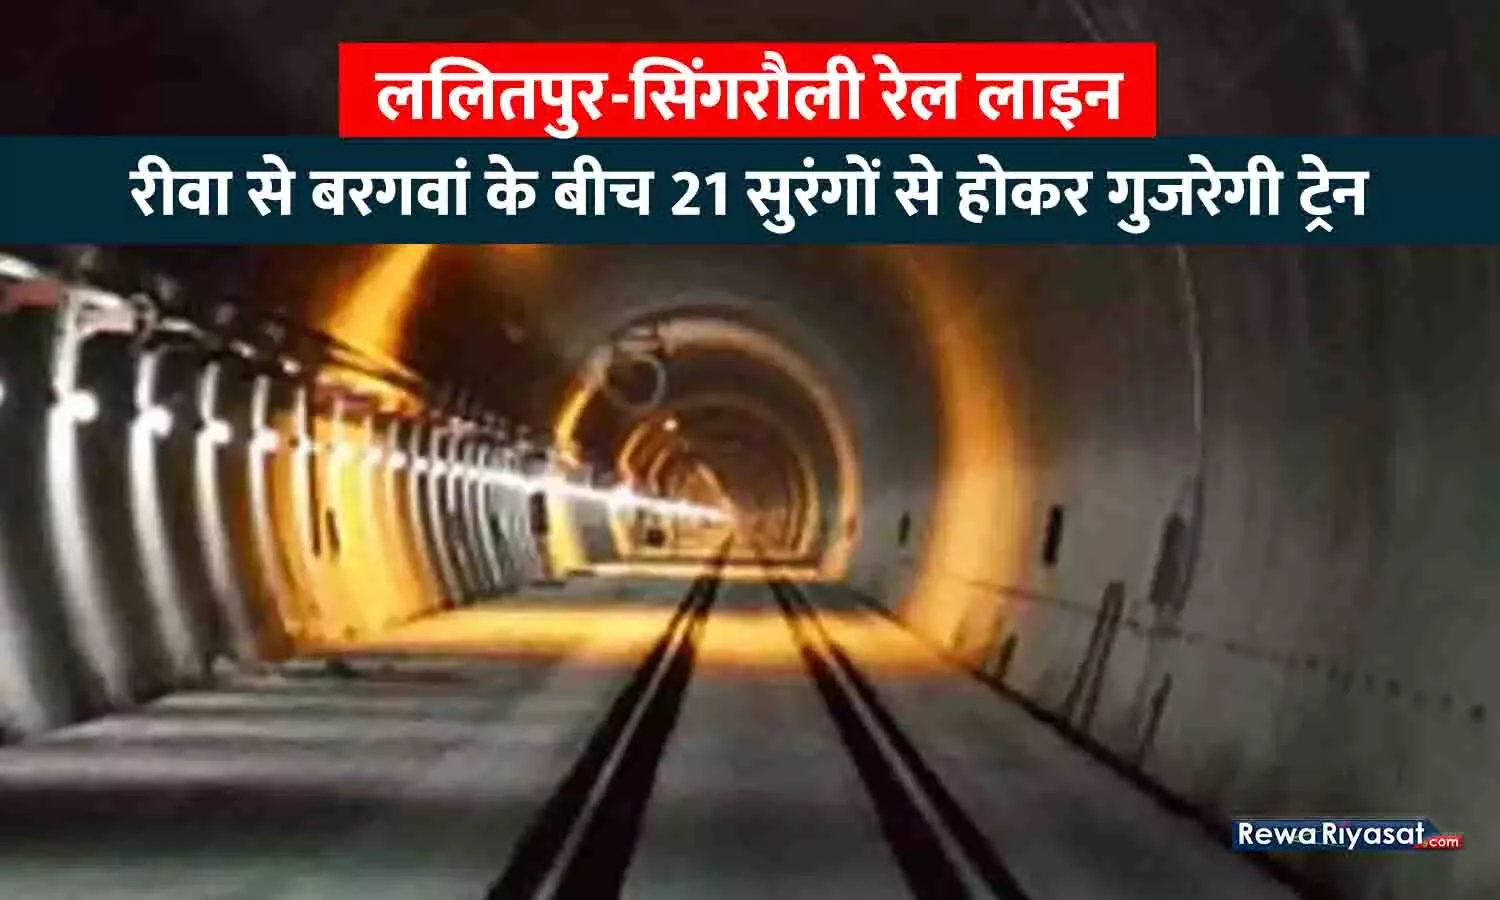 ललितपुर-सिंगरौली रेल लाइन: रीवा से बरगवां के बीच 21 सुरंगों से होकर गुजरेगी ट्रेन, होगा रोमांचक सफर